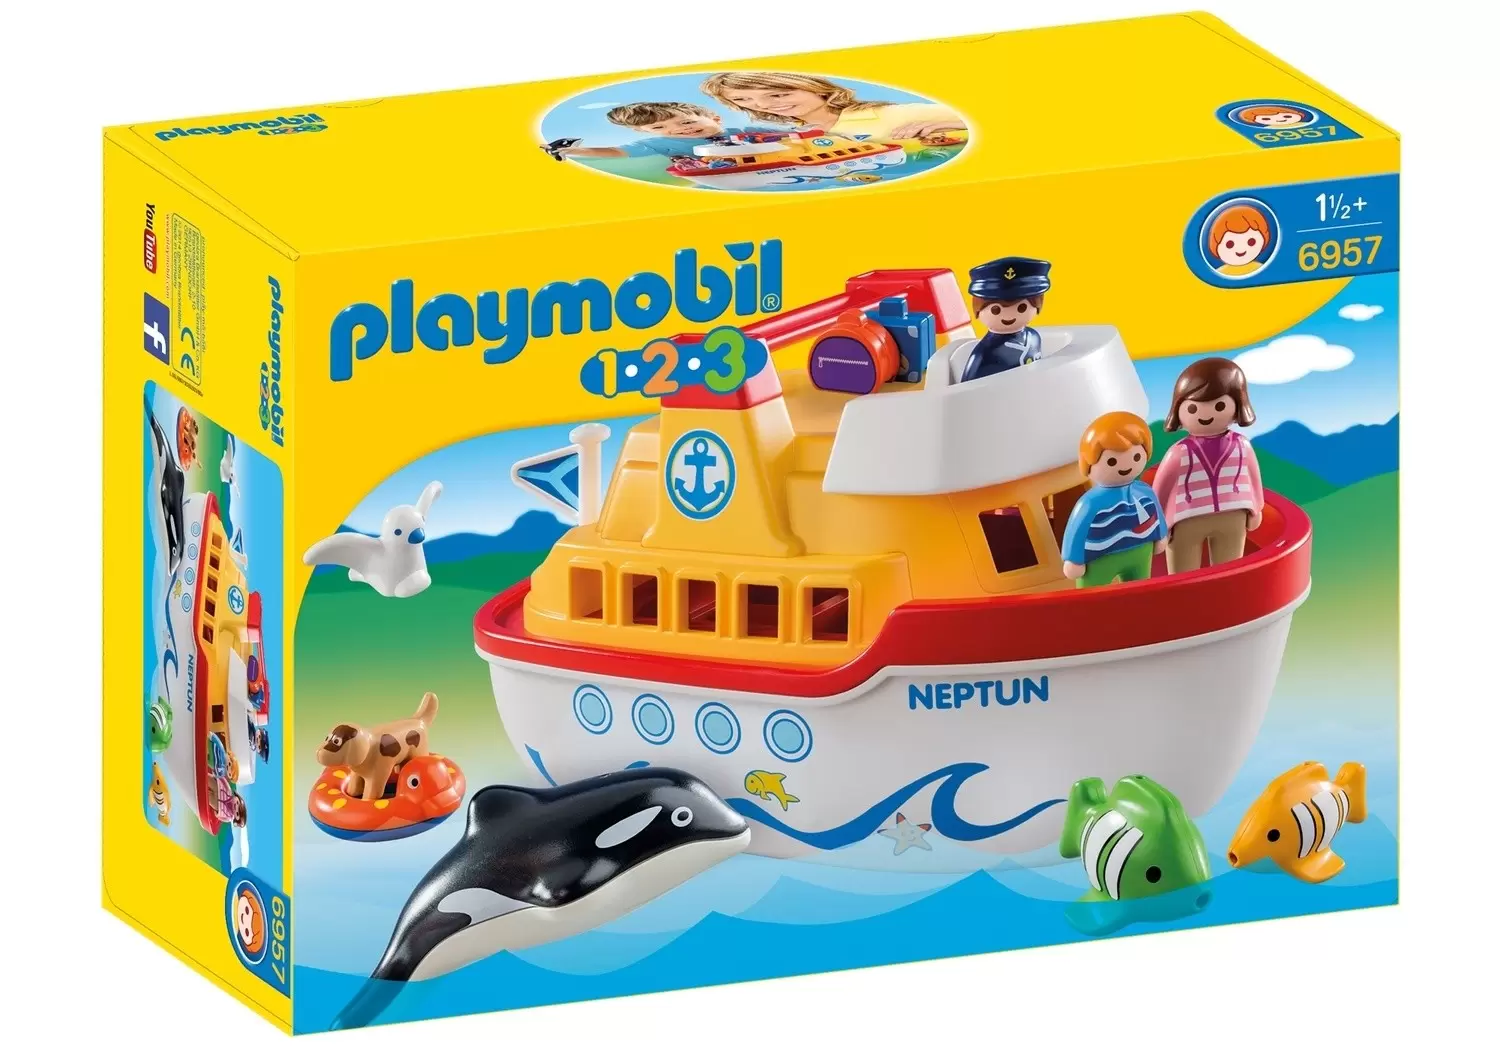 Playmobil 1.2.3 - Navire transportable